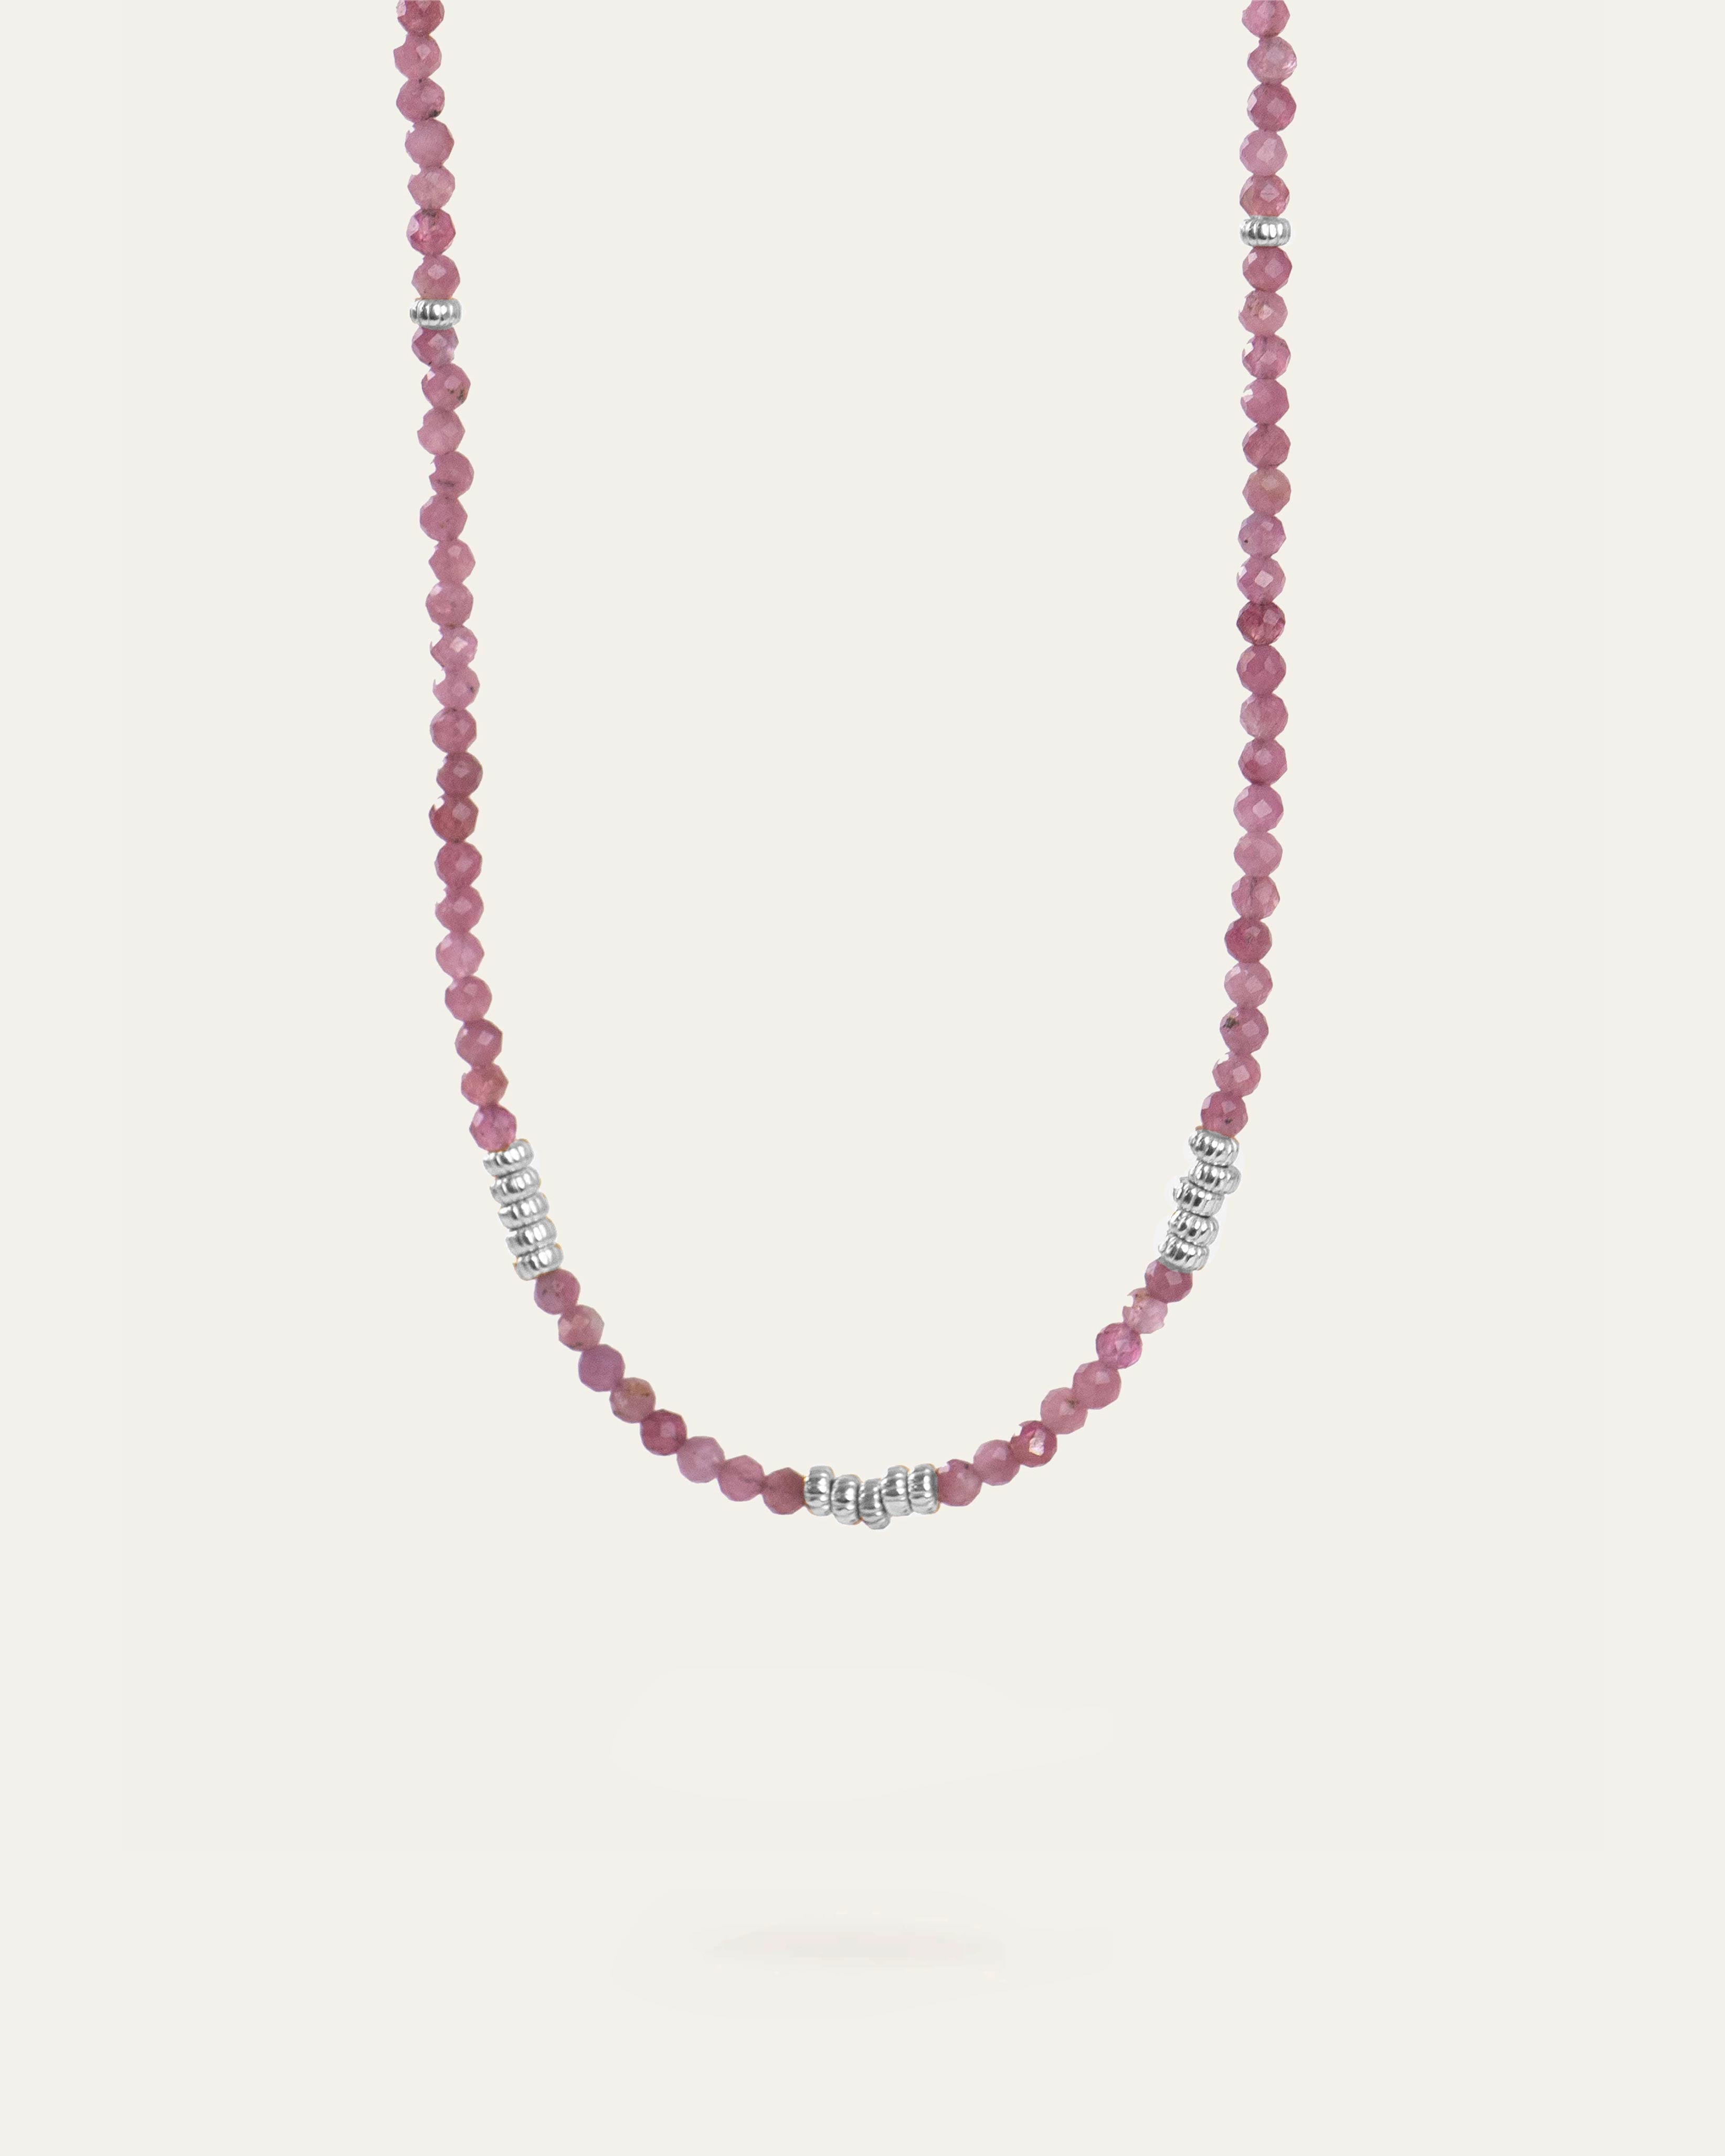 Collier ras de cou composé de tourmalines roses et de petites perles argentées striées en argent massif 925 made in France.